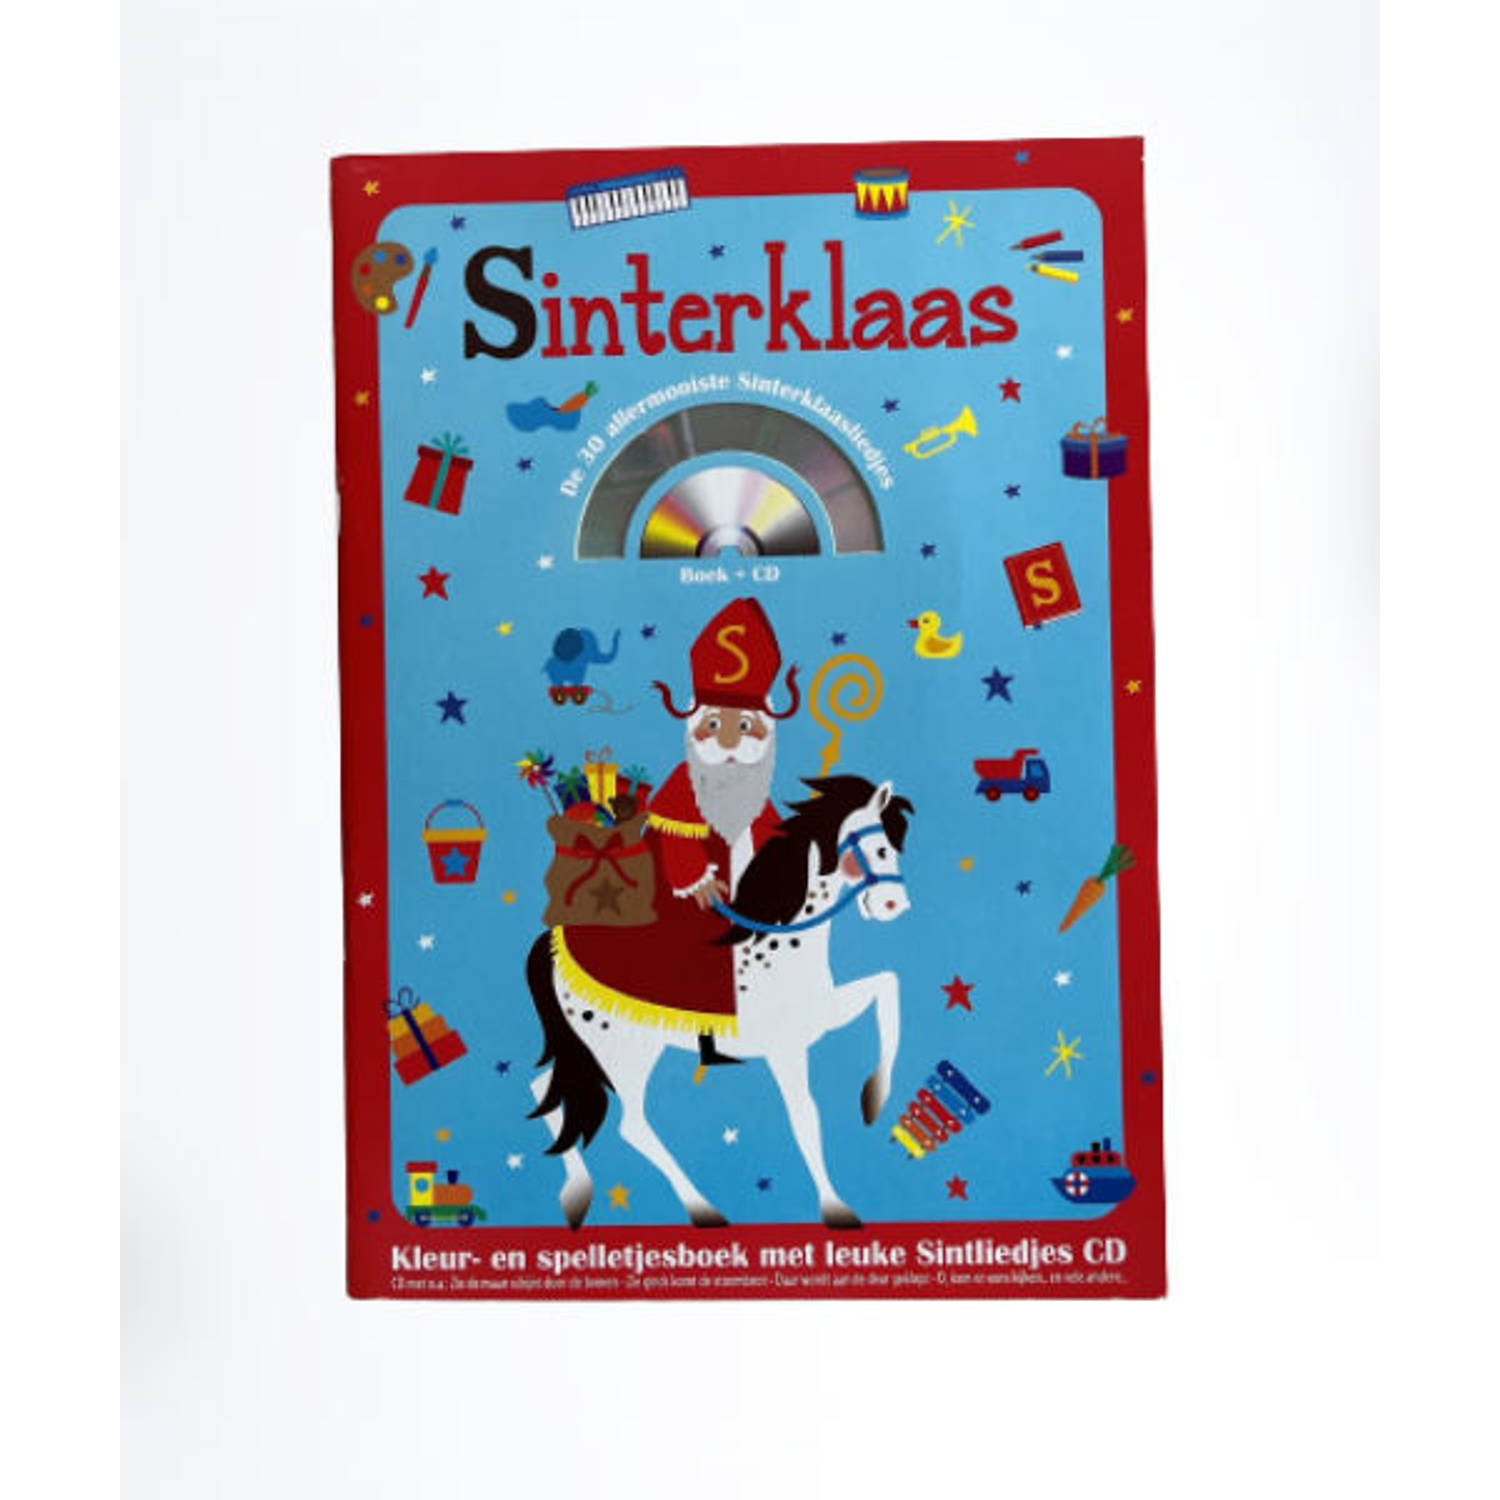 Sinterklaas Kleurboek met CD - Sinterklaas Kleuren / Tekenen / Knutselen inclusief CD met Sinterklaas Muziek - Activiteiten boek met Muziek CD - Sint & piet Kleurboek - Sinterklaas